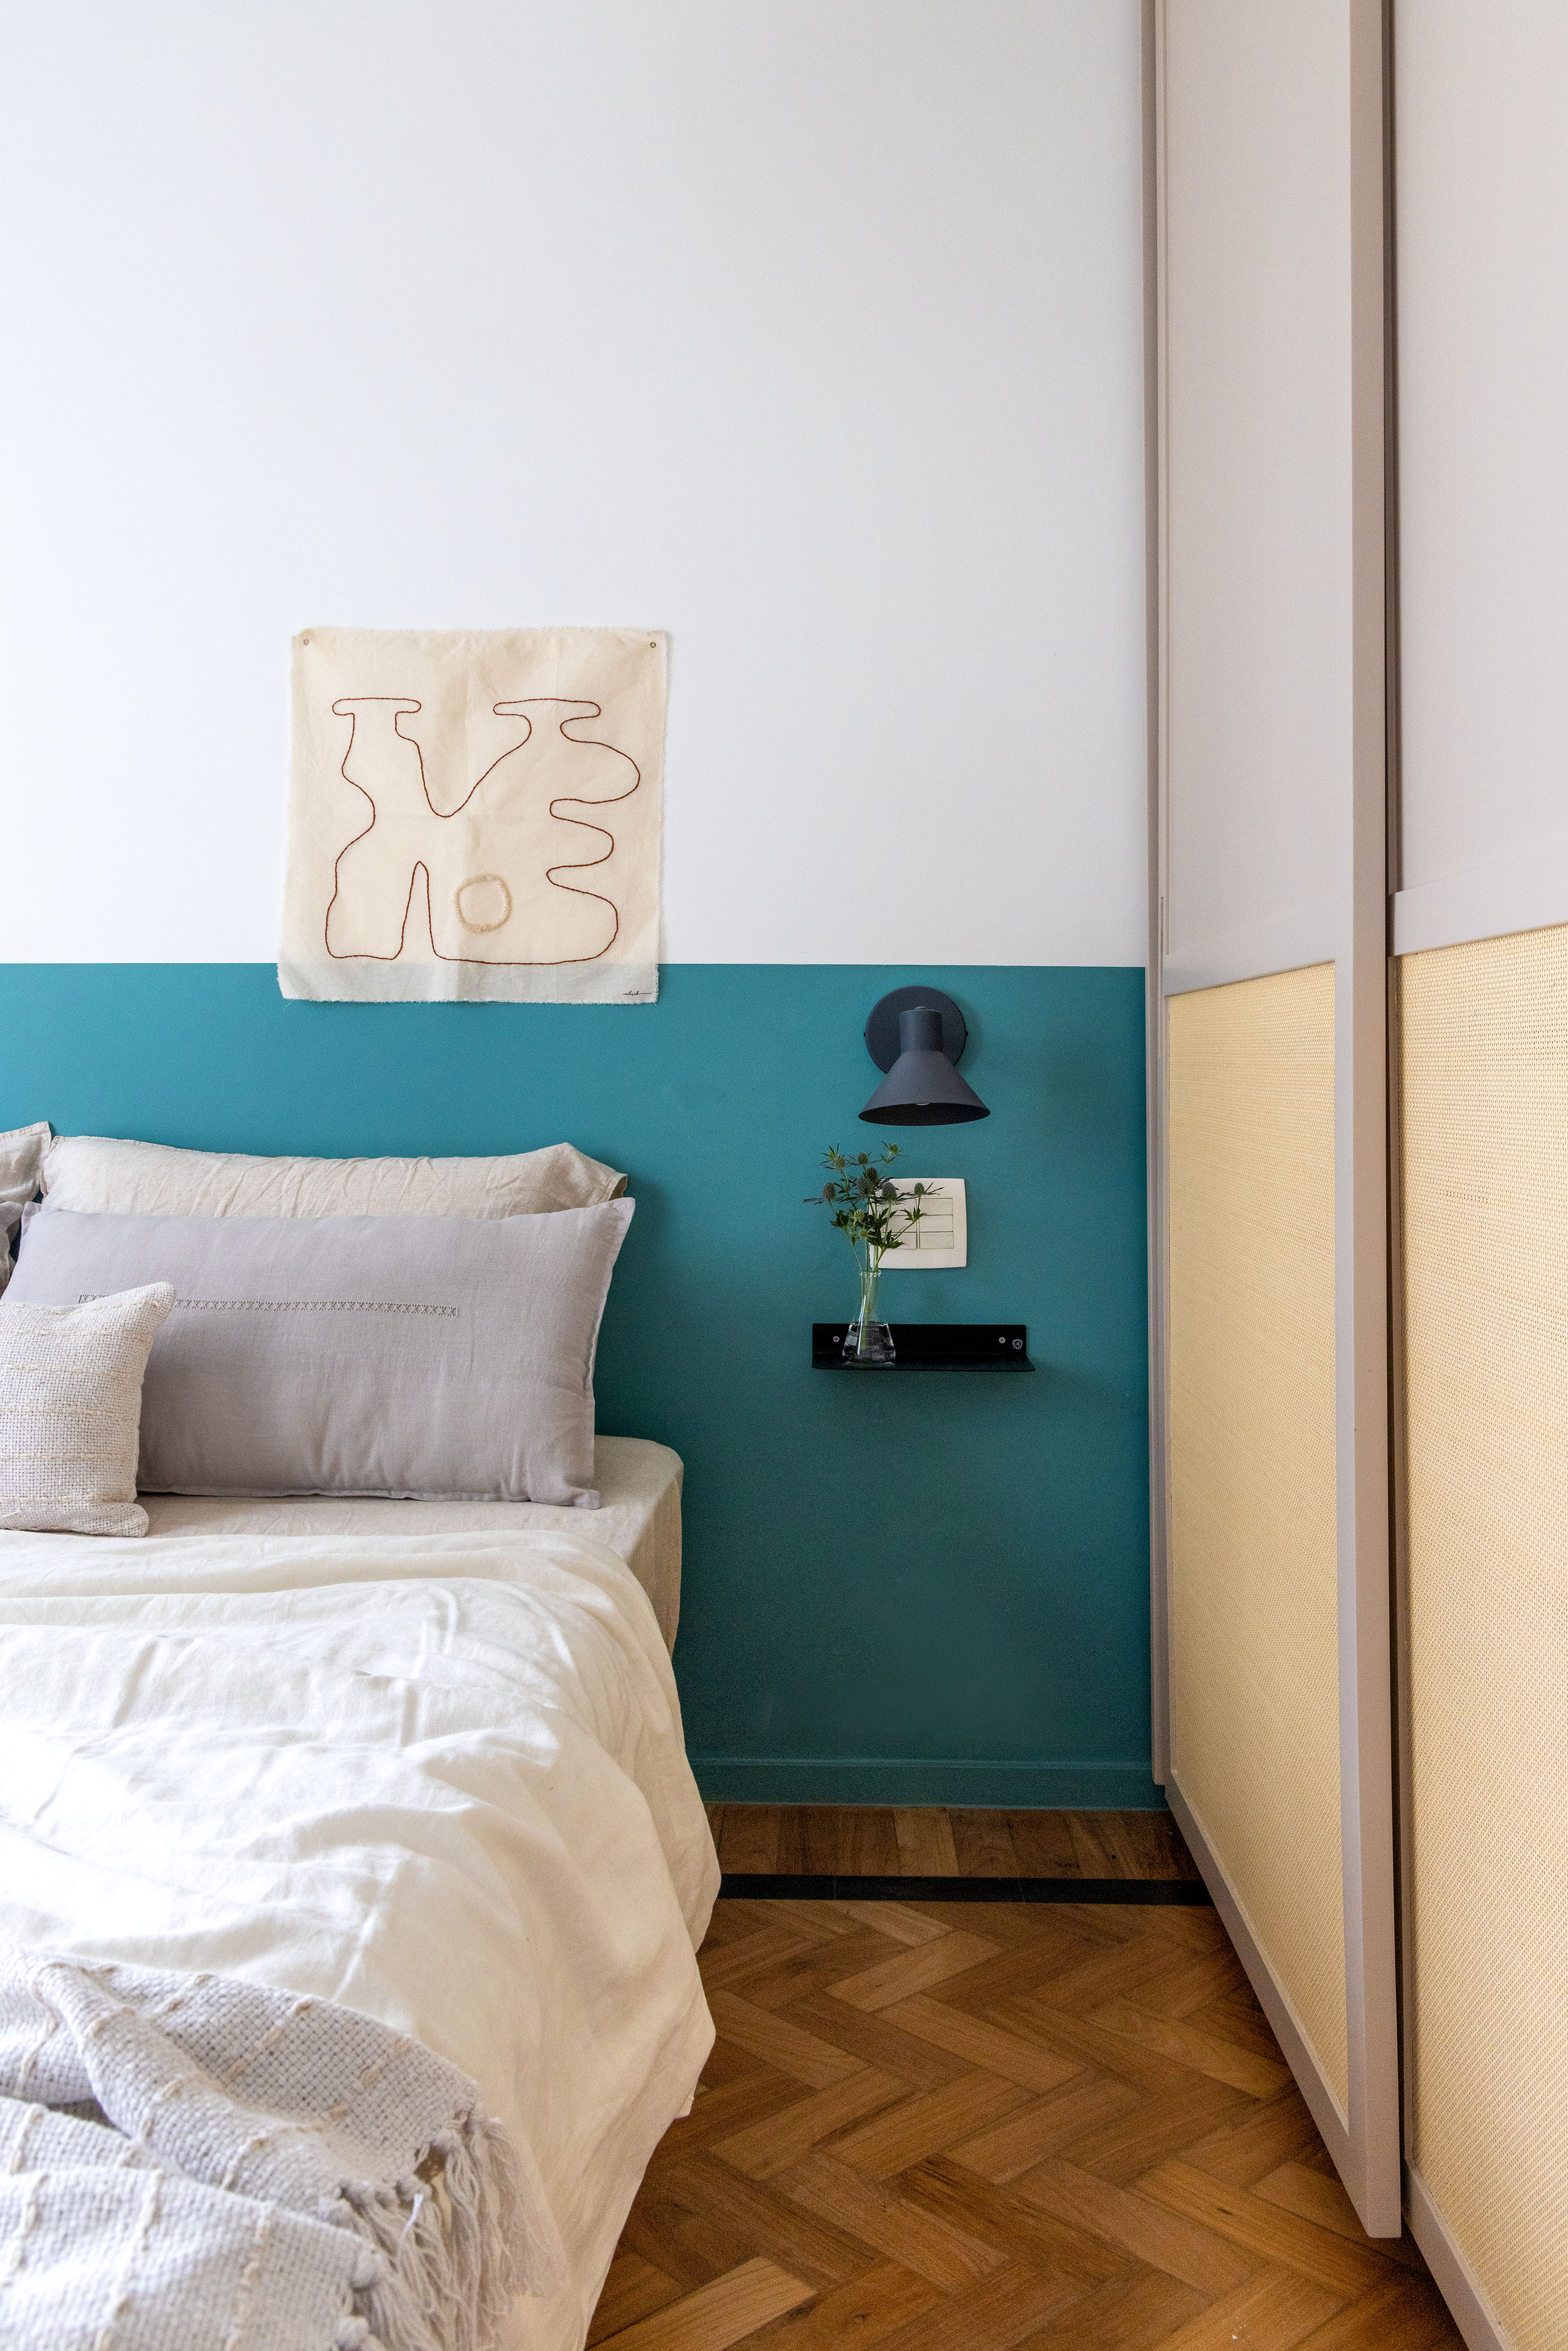 Ladrilhos hidráulicos trazem charme vintage e cor à apê de 90 m². Projeto de Ana Neri. Na foto, quarto de casal, meia parede azul.